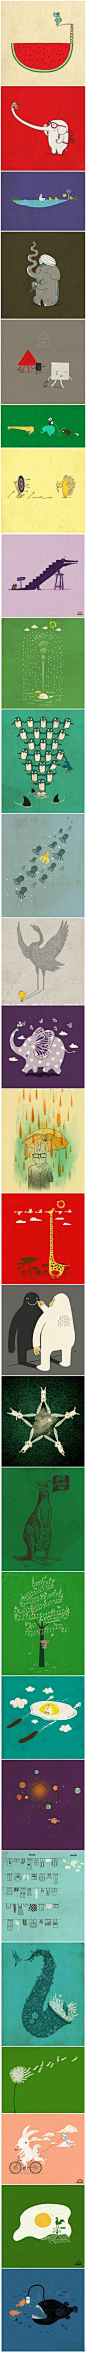 马来西亚插画师Heng Swee Lim ，他的作品幽默温馨，渗透着智慧，值得一品。「图转」